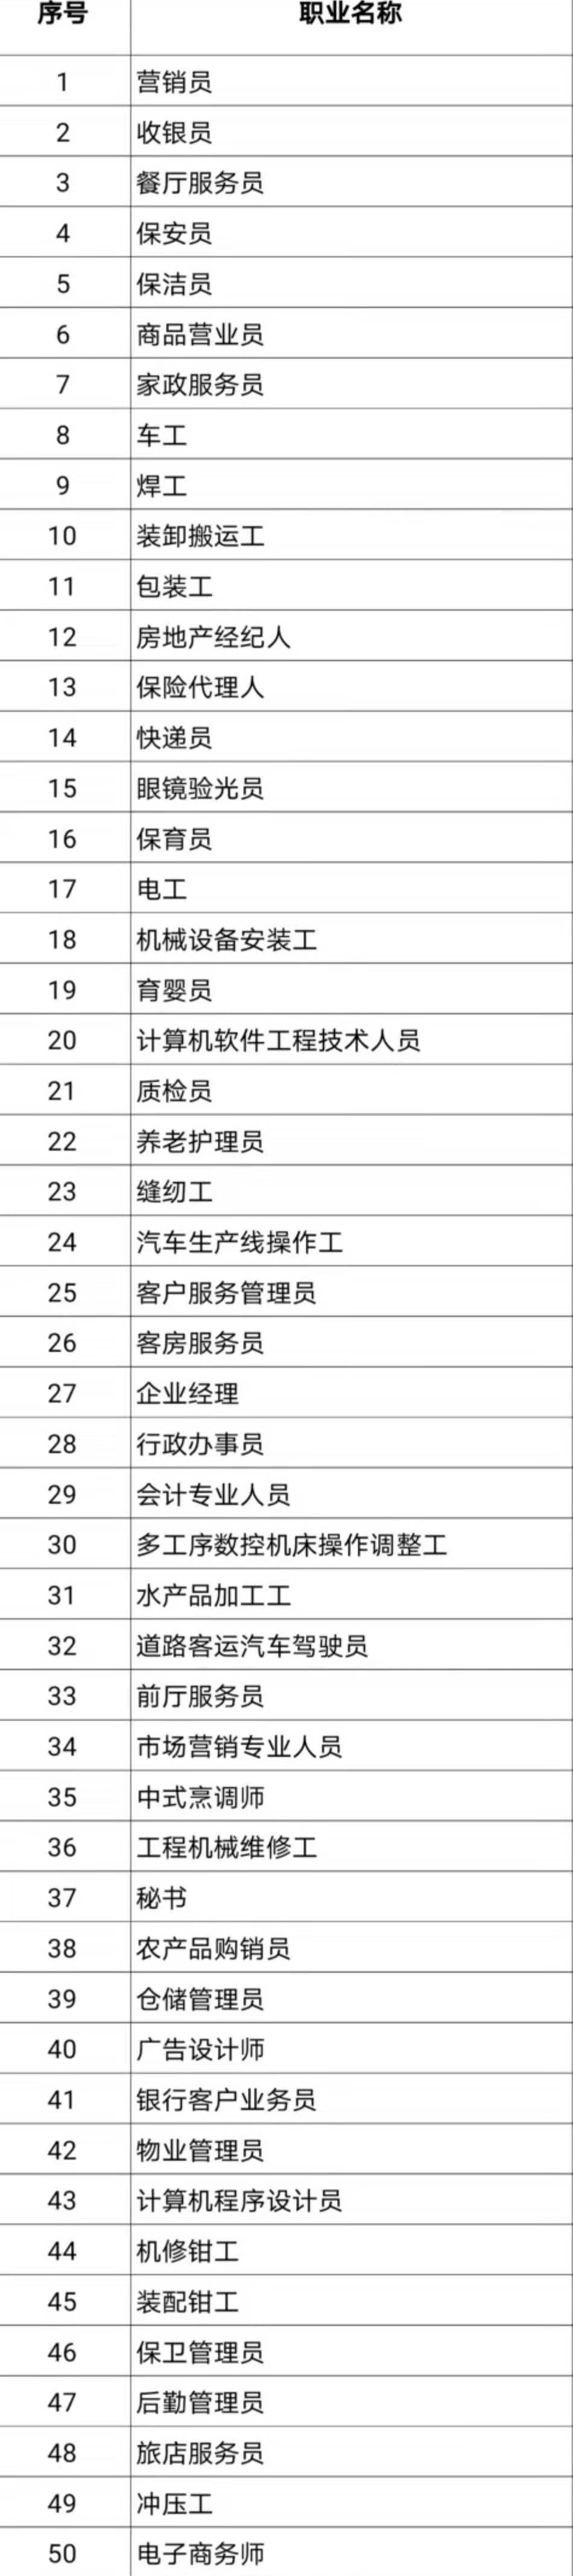 中国官方公布100个短缺职业排行这些职业名列前十